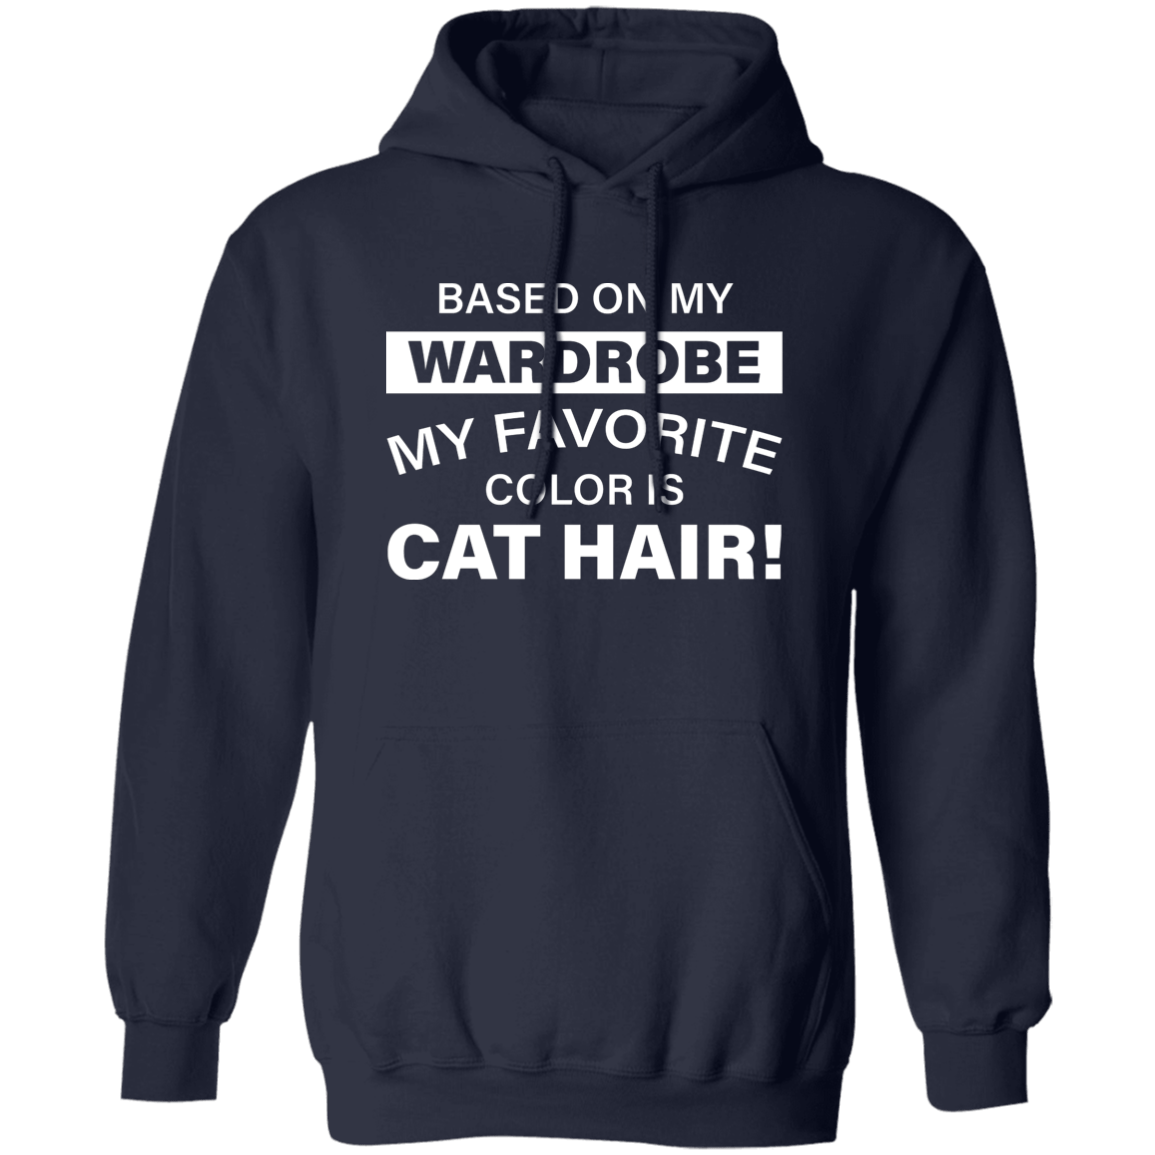 Favorite Color Cat Hair - Hoodie.